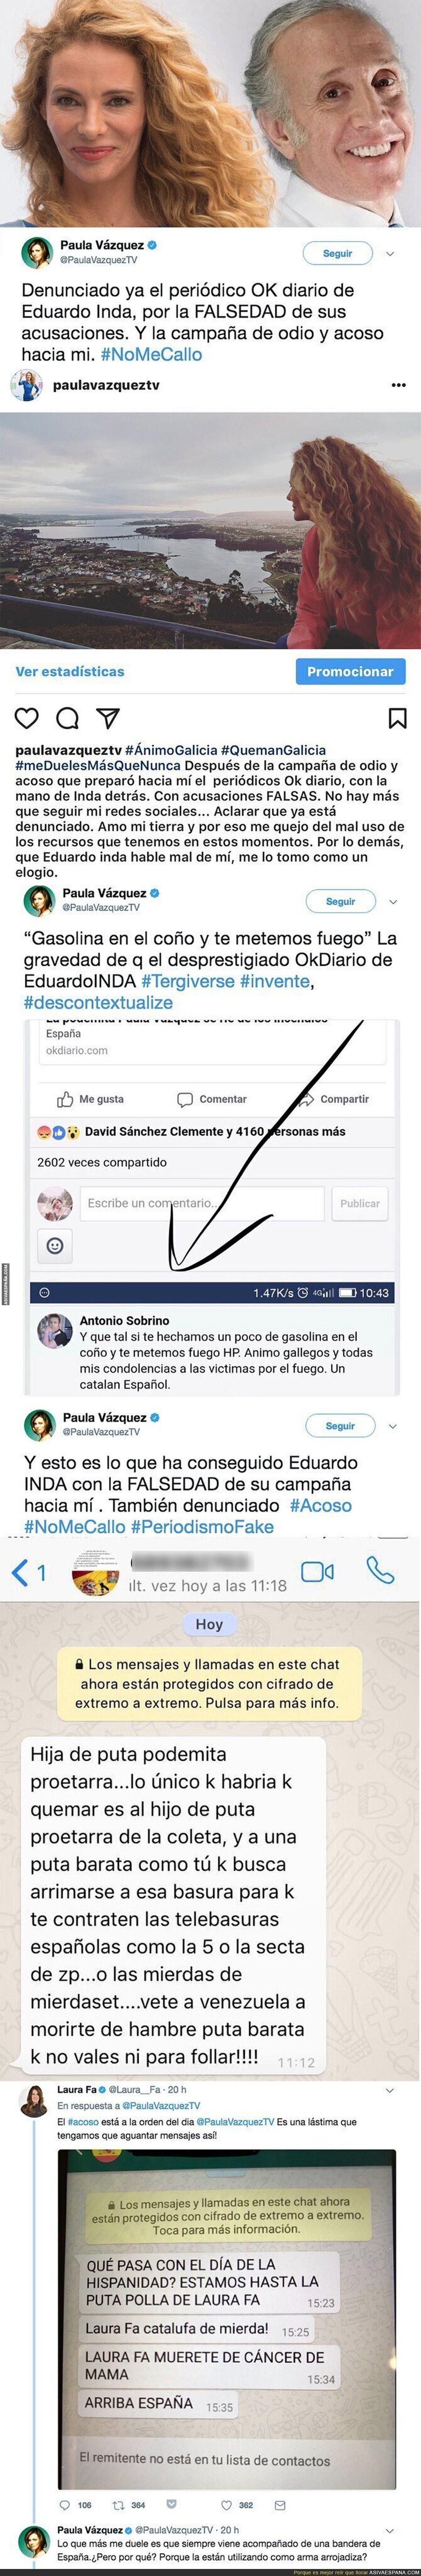 Los mensajes amenazantes que está recibiendo Paula Vázquez por culpa de Eduardo Inda